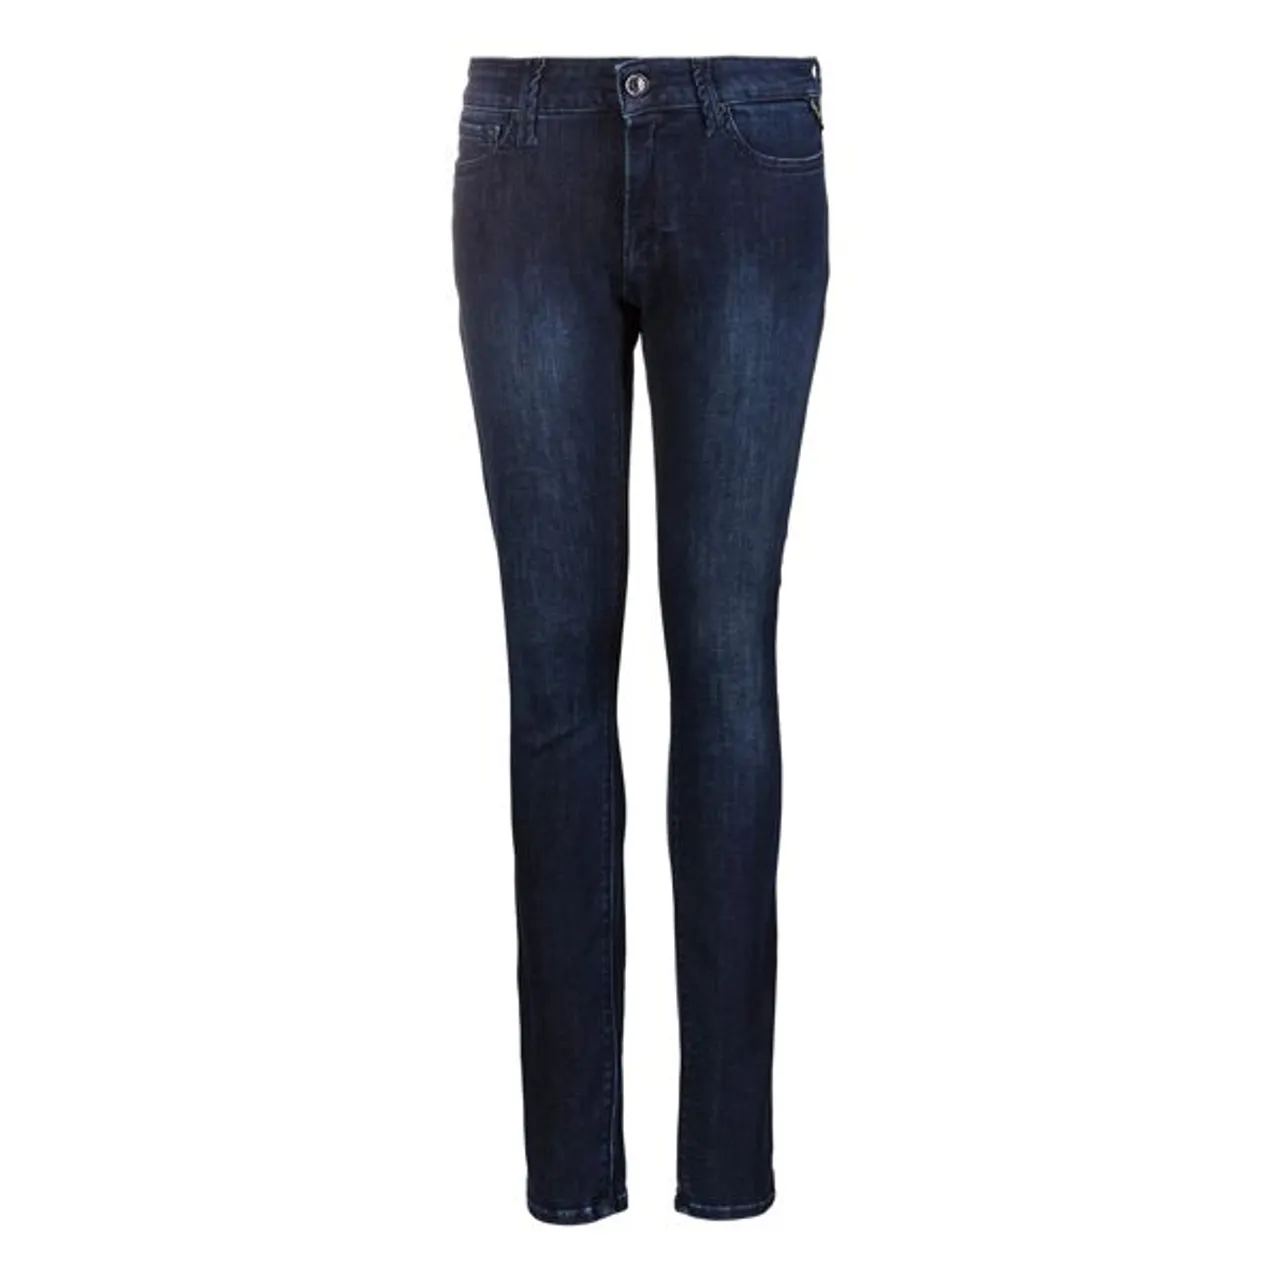 5-Pocket-Jeans REPLAY "NEW LUZ" Gr. 29, Länge 32, blau (dark blue 771) Damen Jeans Röhrenjeans in Ankle-Länge